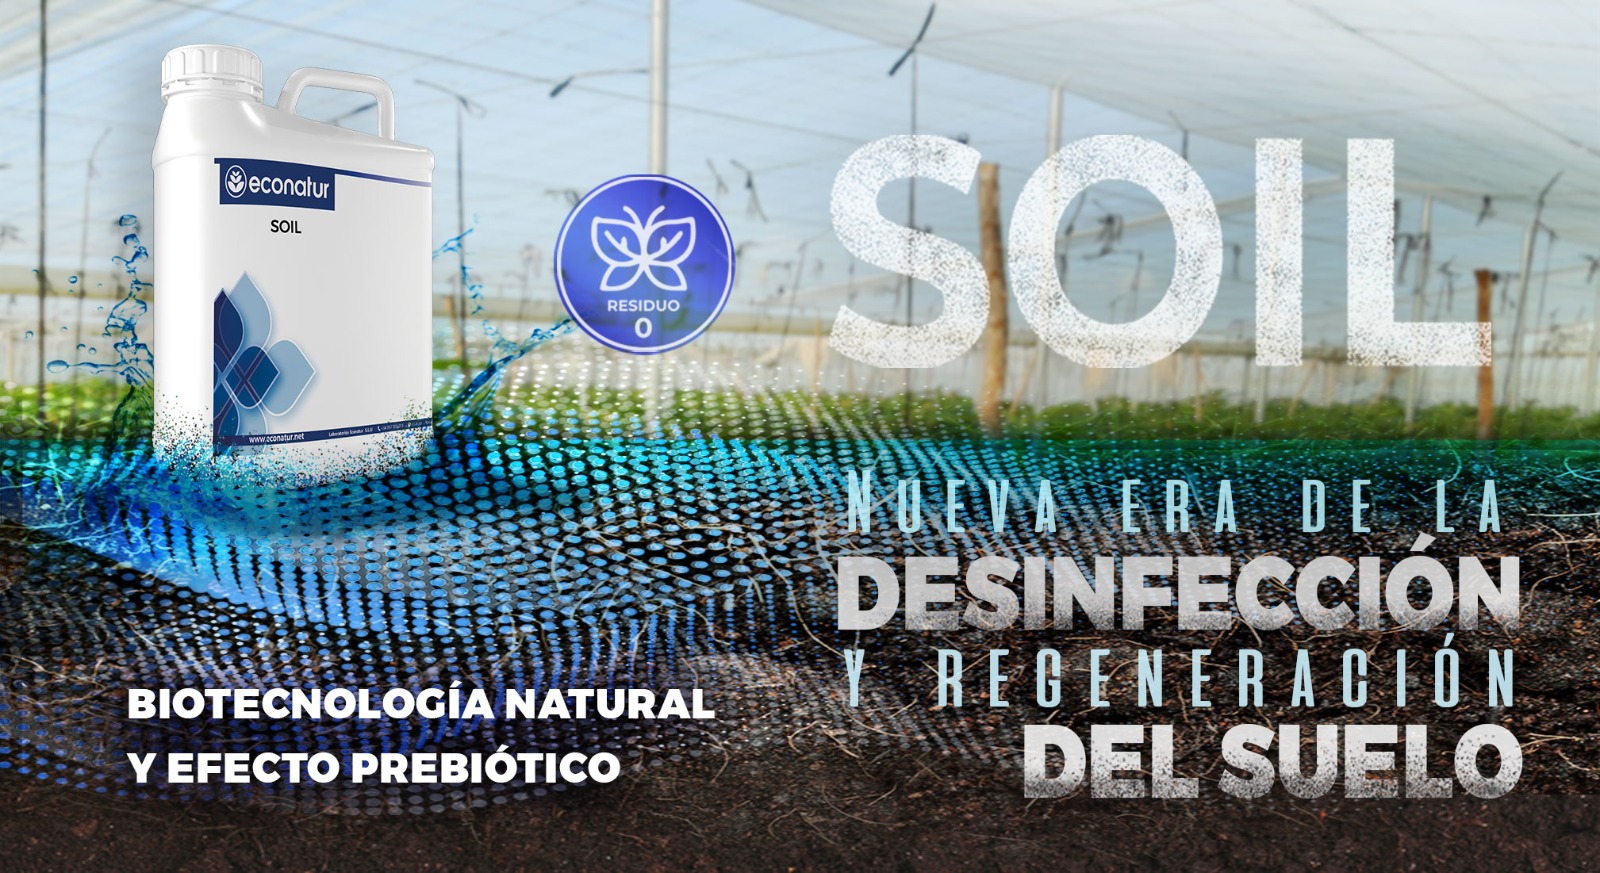 Soil: desinfección y regeneración de suelos